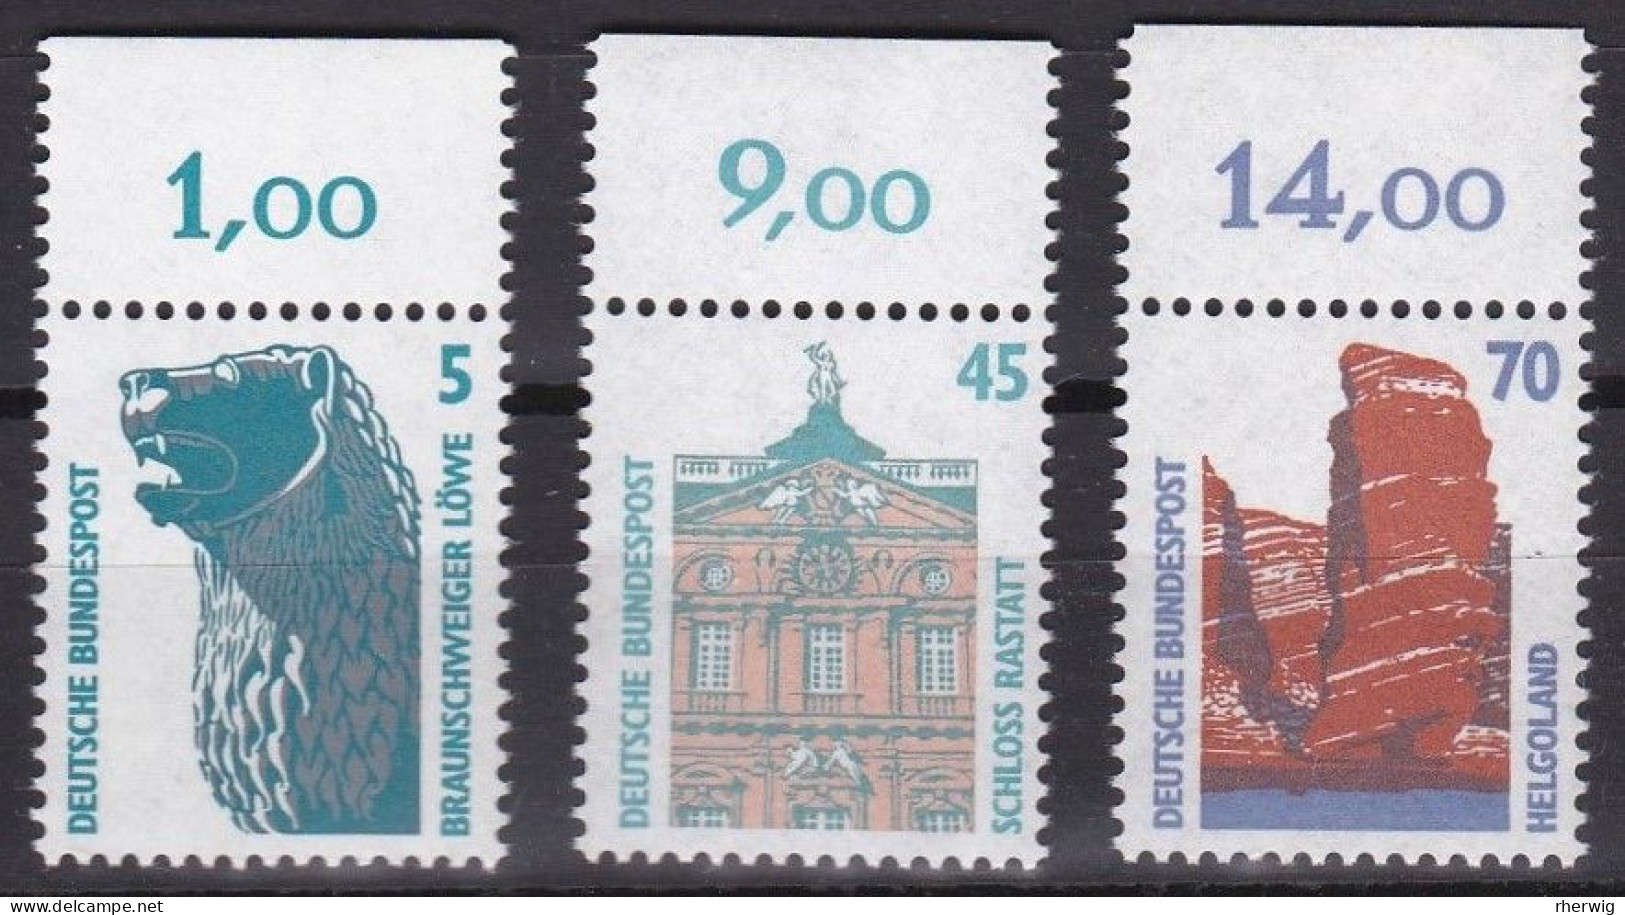 BRD, 1990, Nr. 1448, 1468-1469 ** Sehenswürdigkeiten (VII, VIII), 3 Marken Mit Oberrand - Ongebruikt